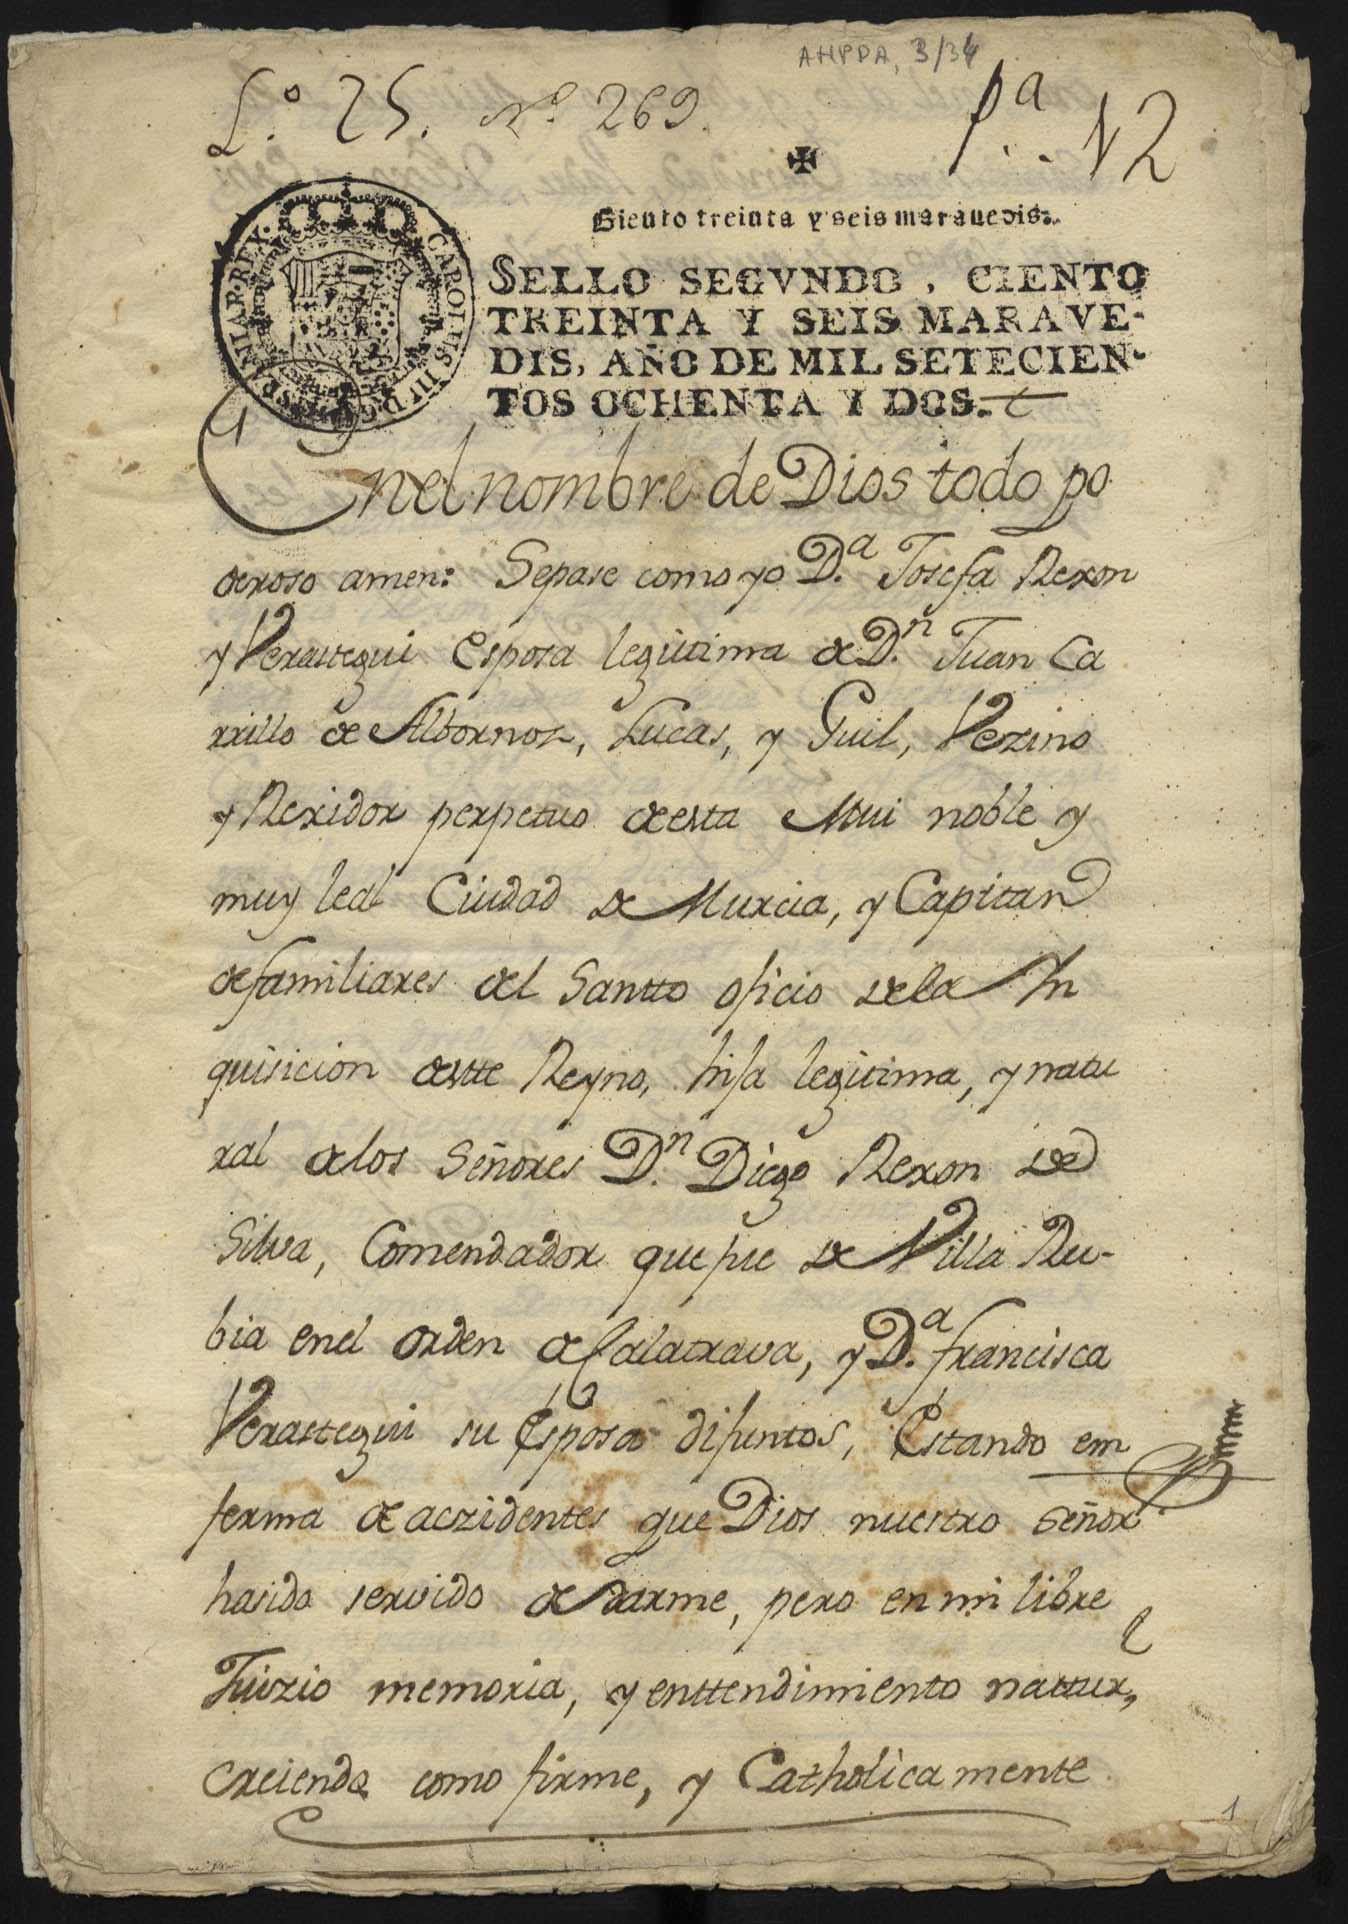 Traslado auténtico del testamento de Josefa Rejón Verastegui, vecina de Murcia, realizado ante el notario Baltasar Ruiz el 16 de marzo de 1717.